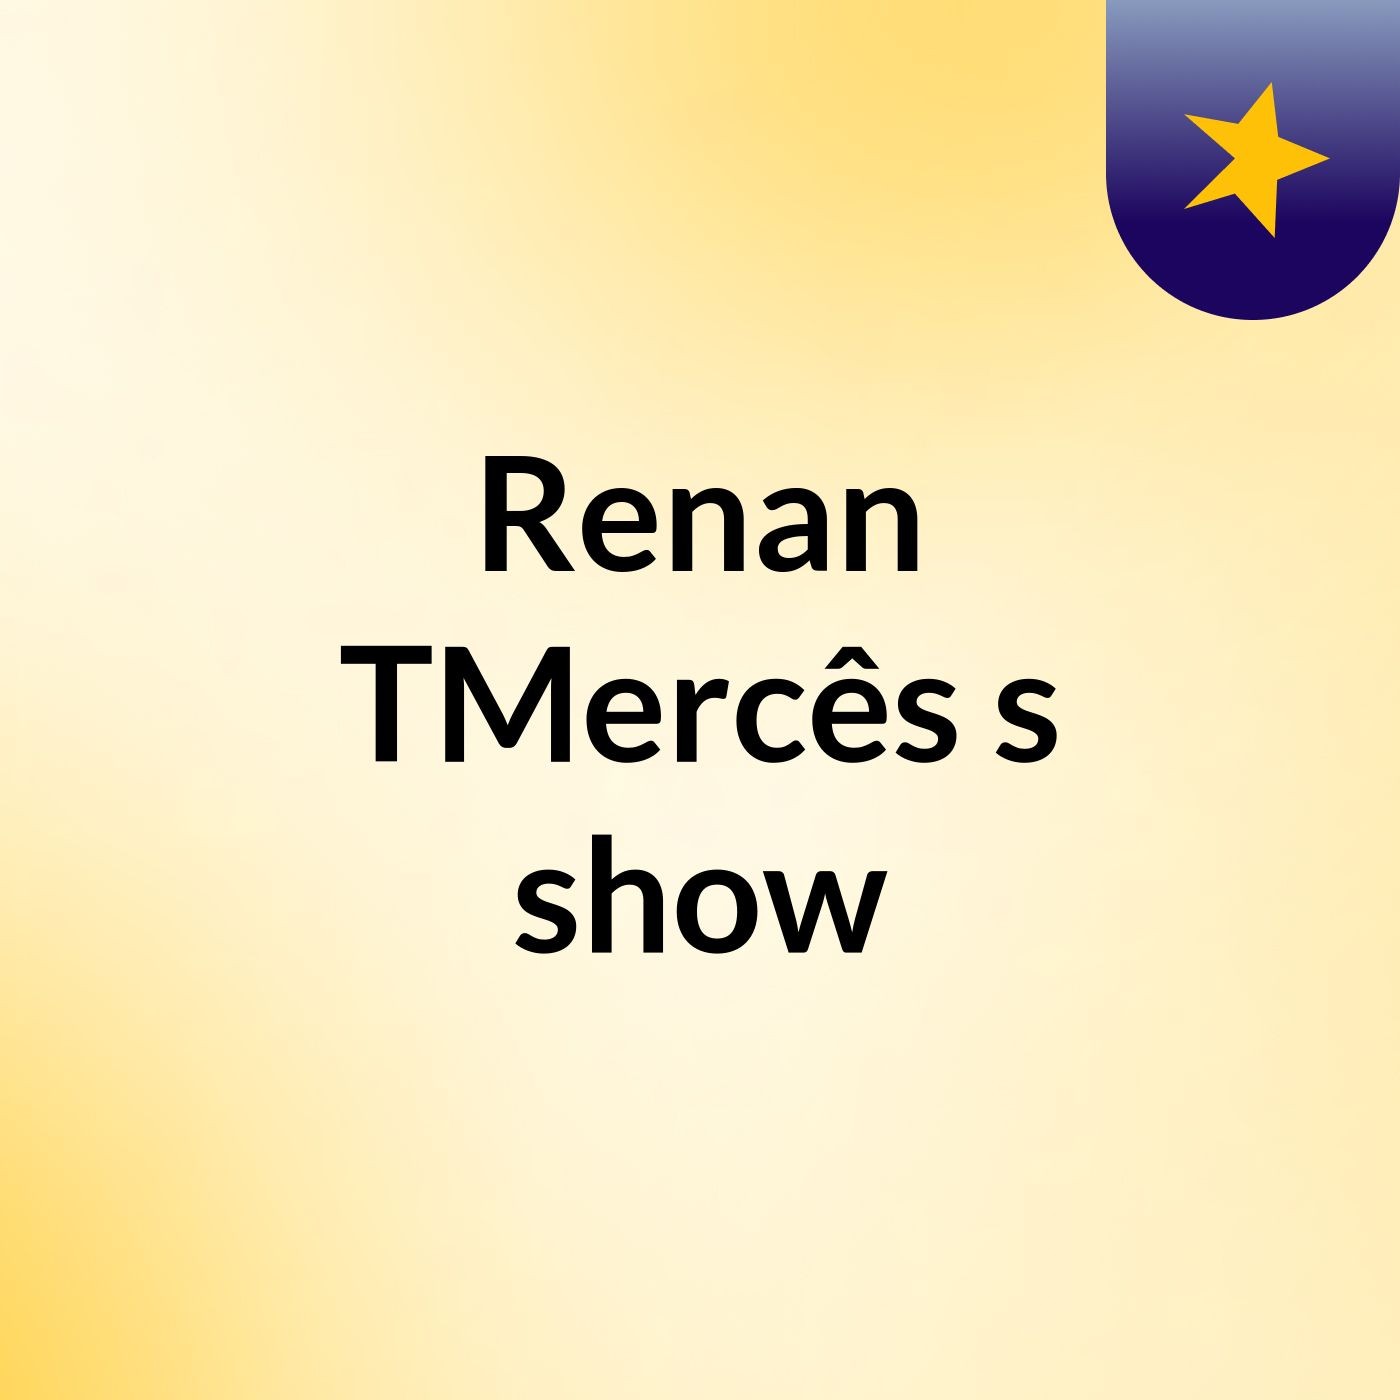 Renan TMercês's show